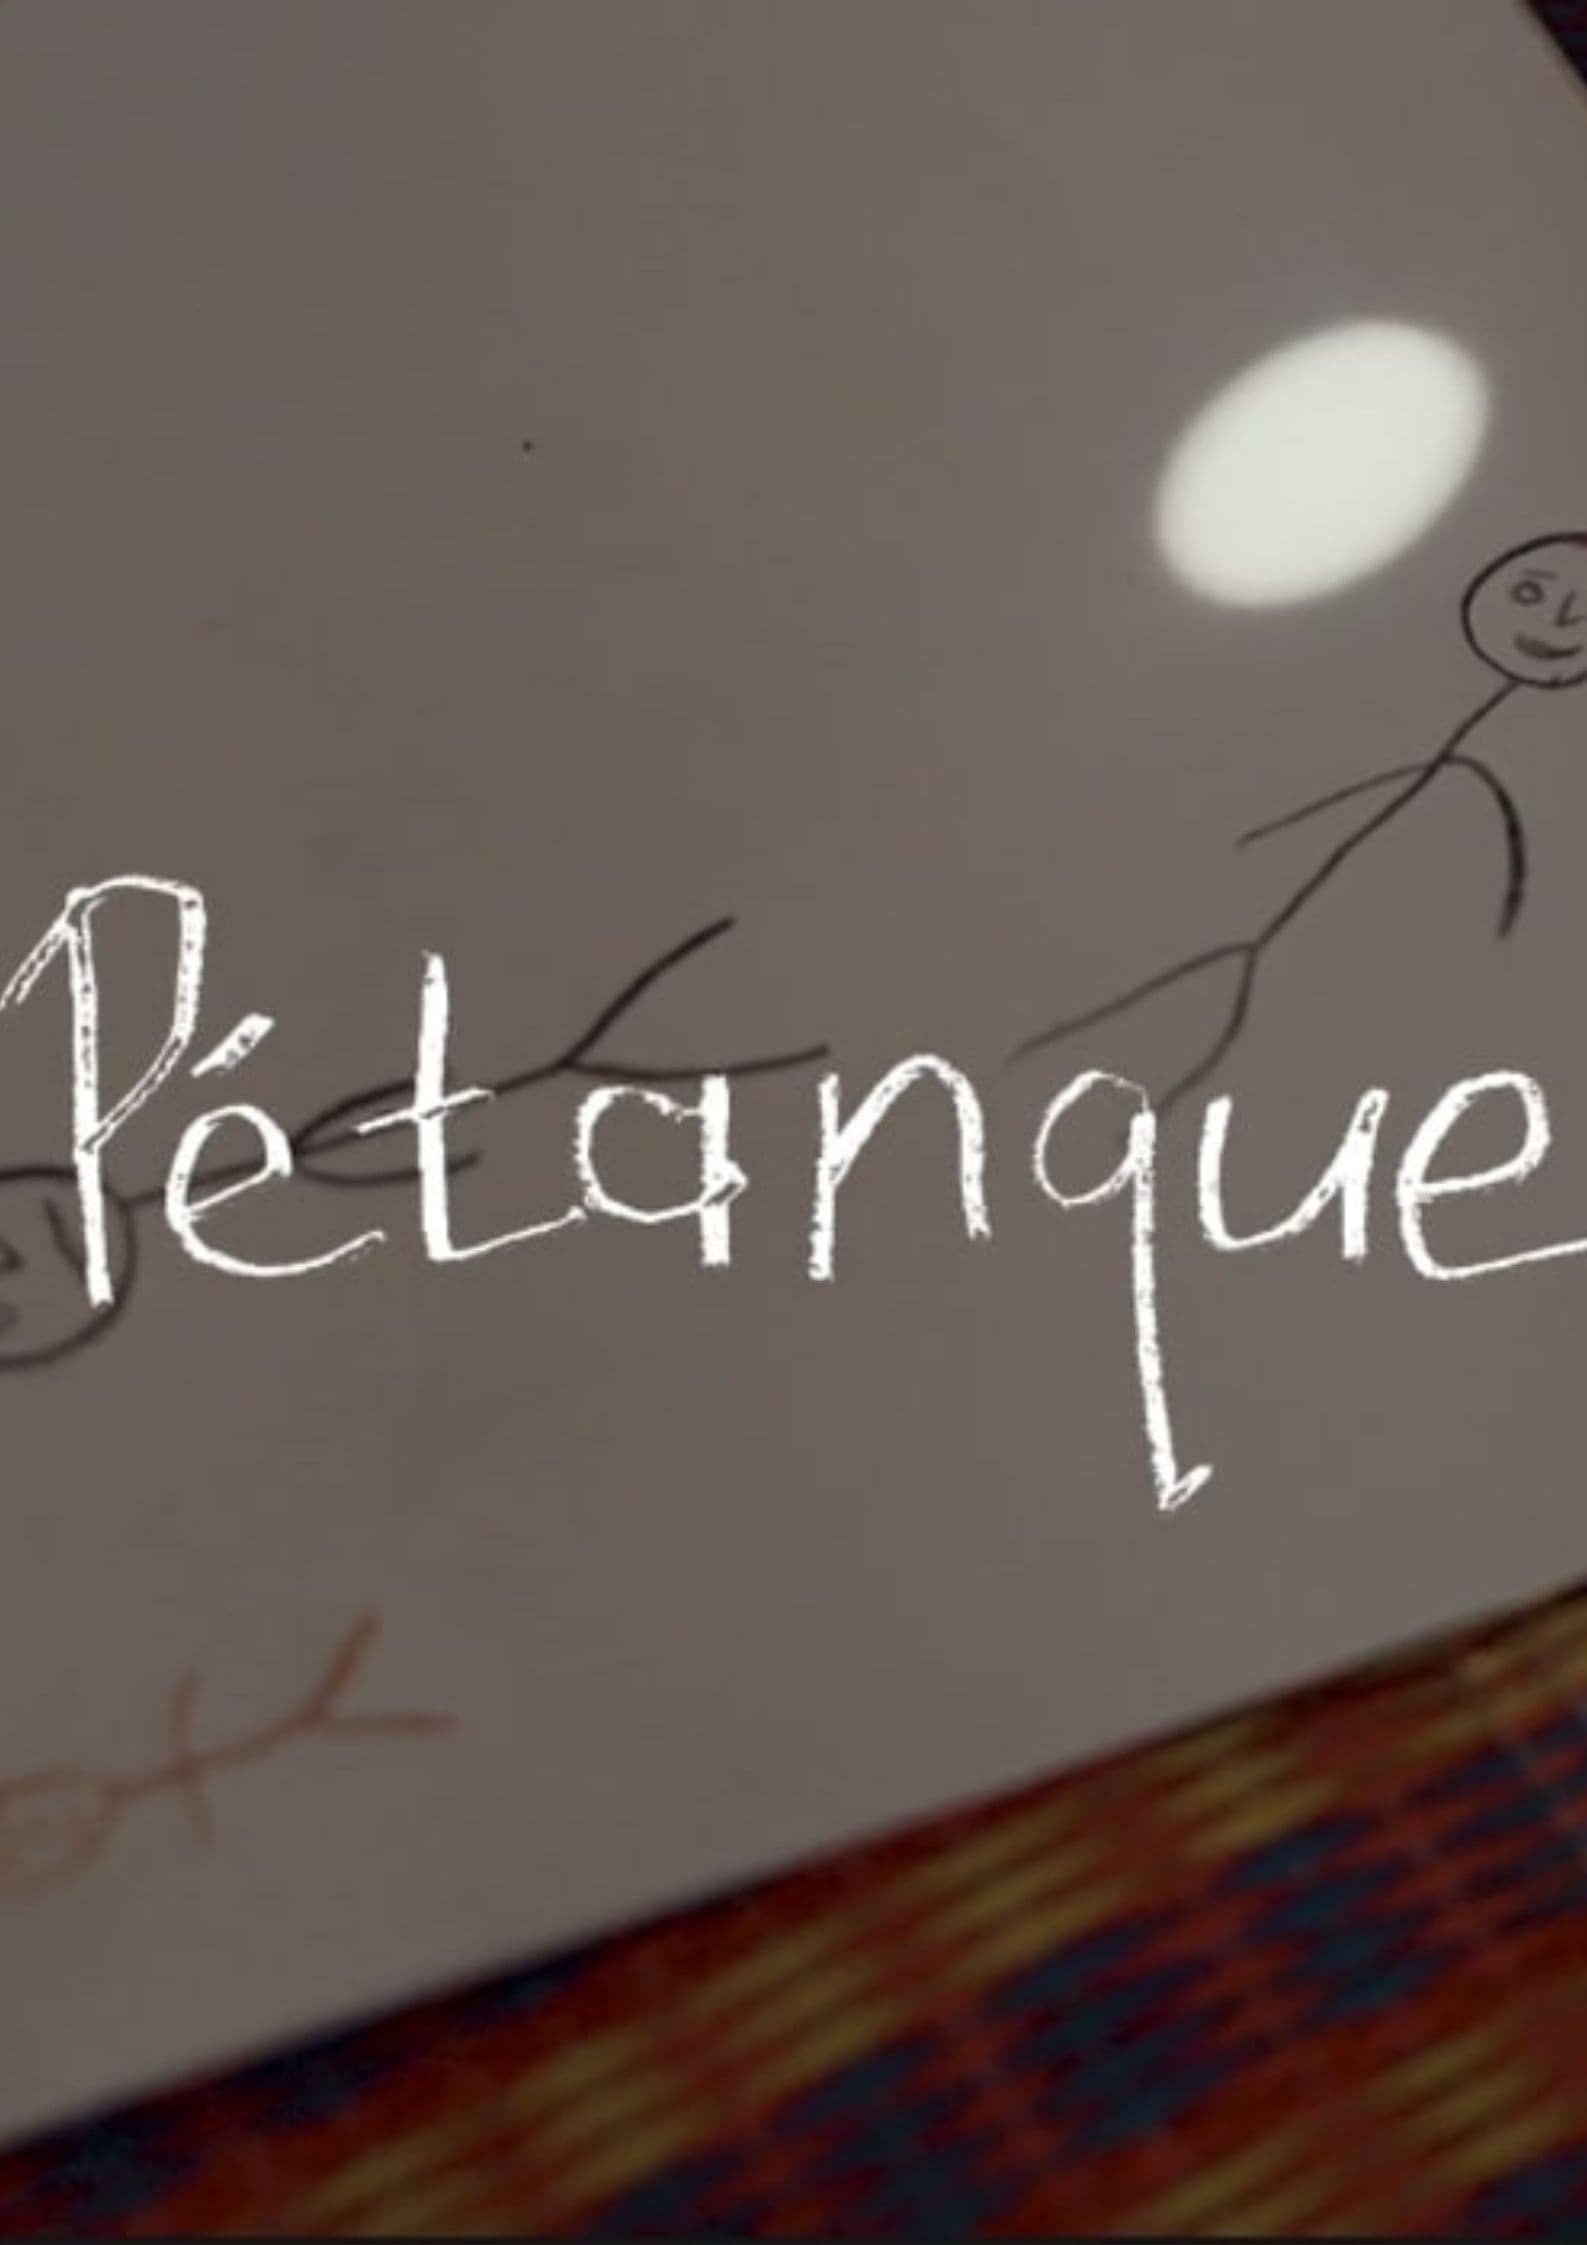 Pétanque: Legacies of a secret war